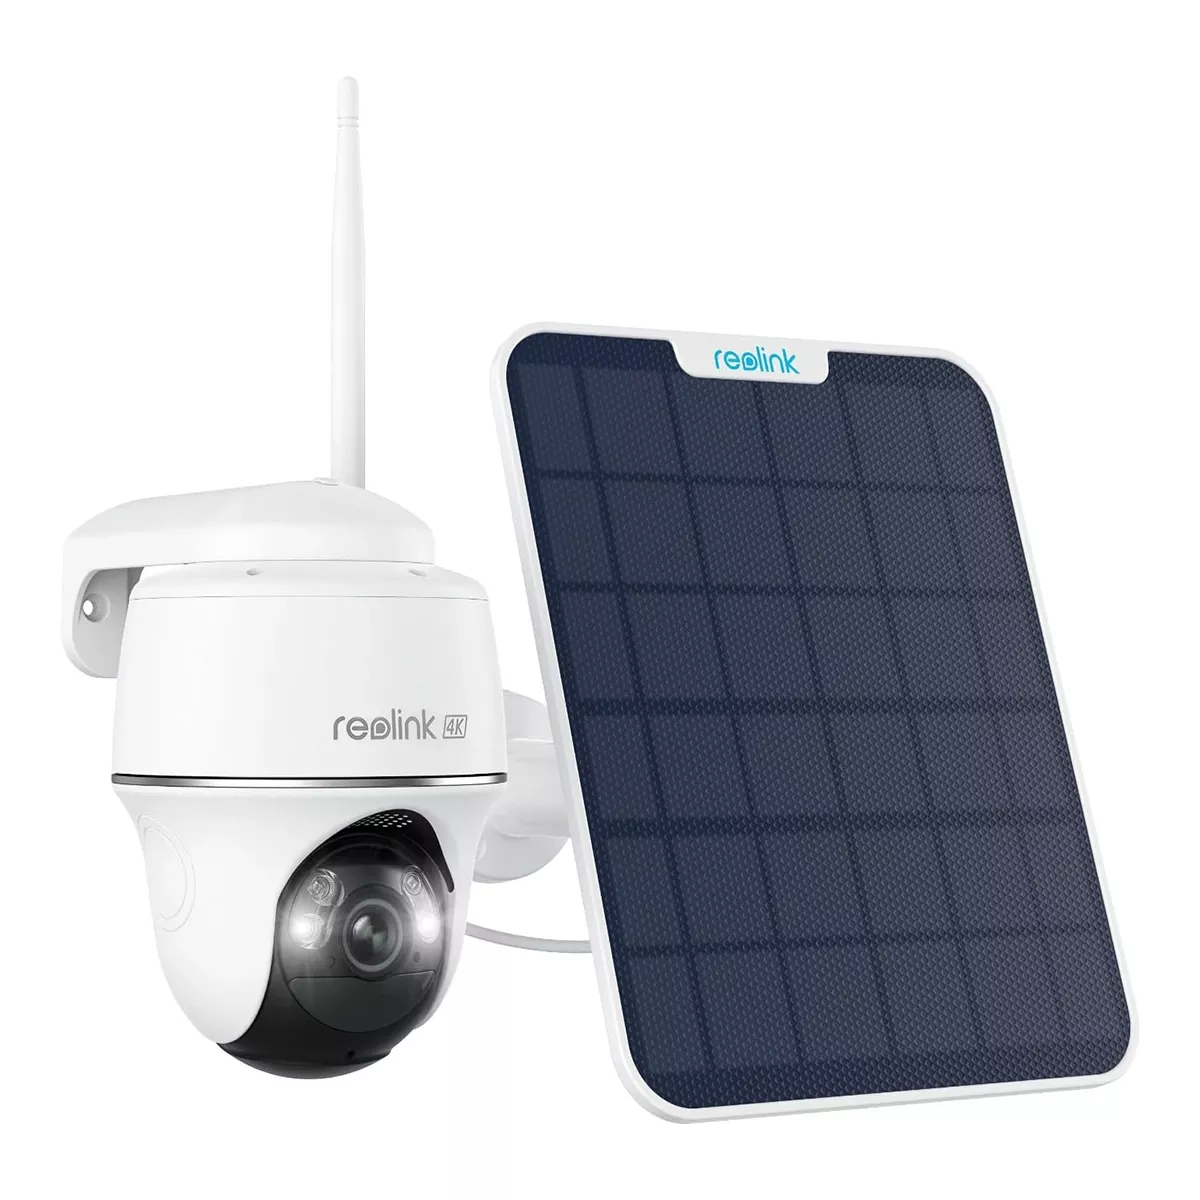 4K 8MP Caméra Surveillance WiFi Extérieure avec Projecteur, 2,4/5Ghz WiFi  PTZ Caméra Détection Humaine/Animaux/Véhicule